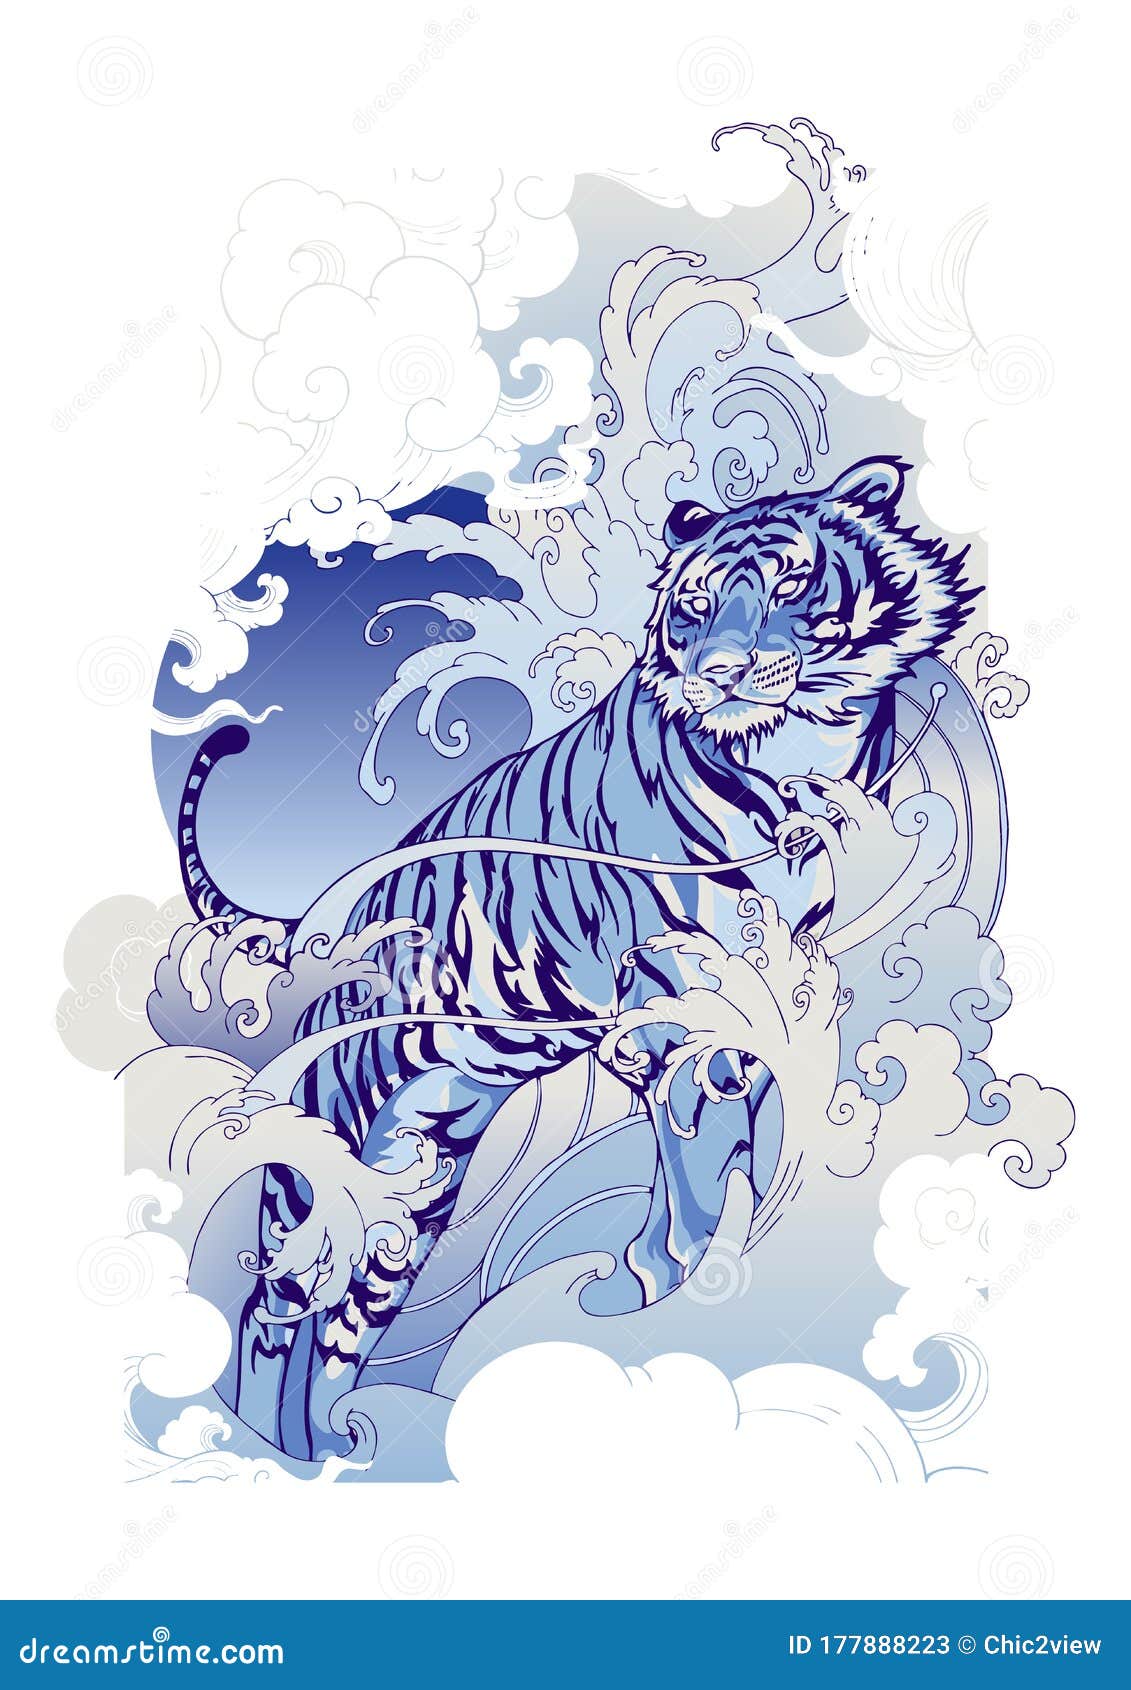 White tiger by Cheeraw on DeviantArt